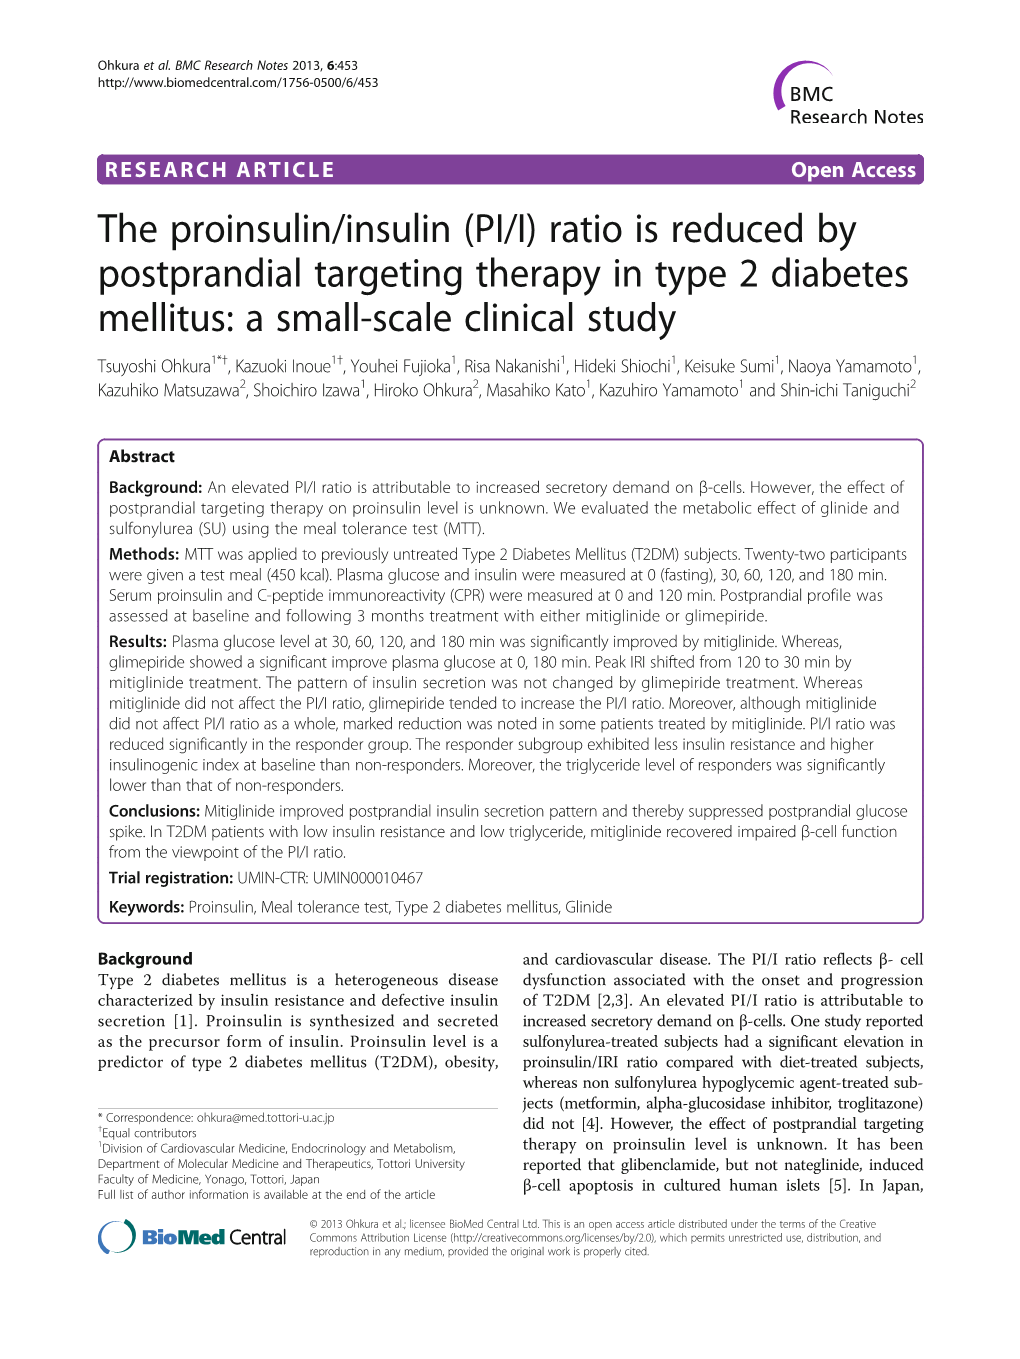 The Proinsulin/Insulin